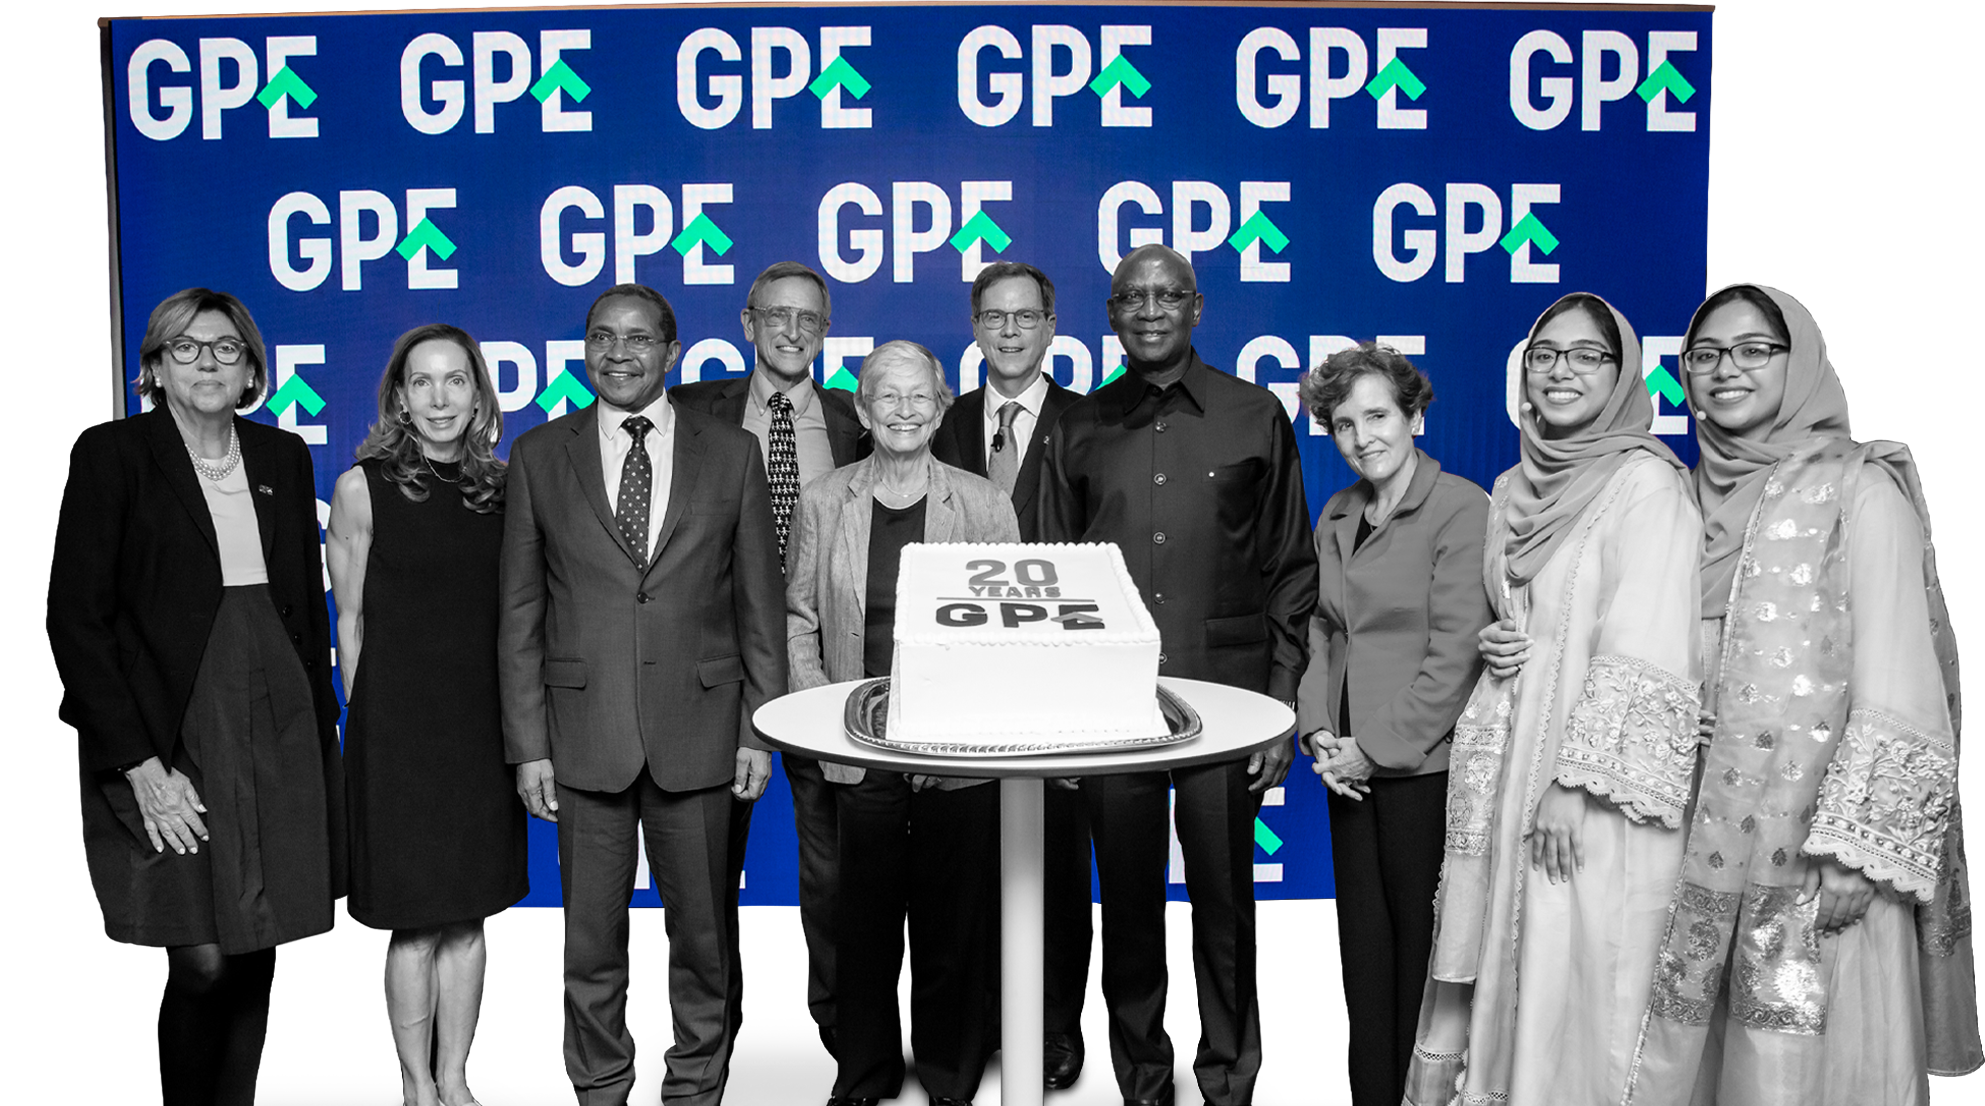 Le GPE a célébré 20 ans d'investissement dans une éducation de qualité pour chaque enfant